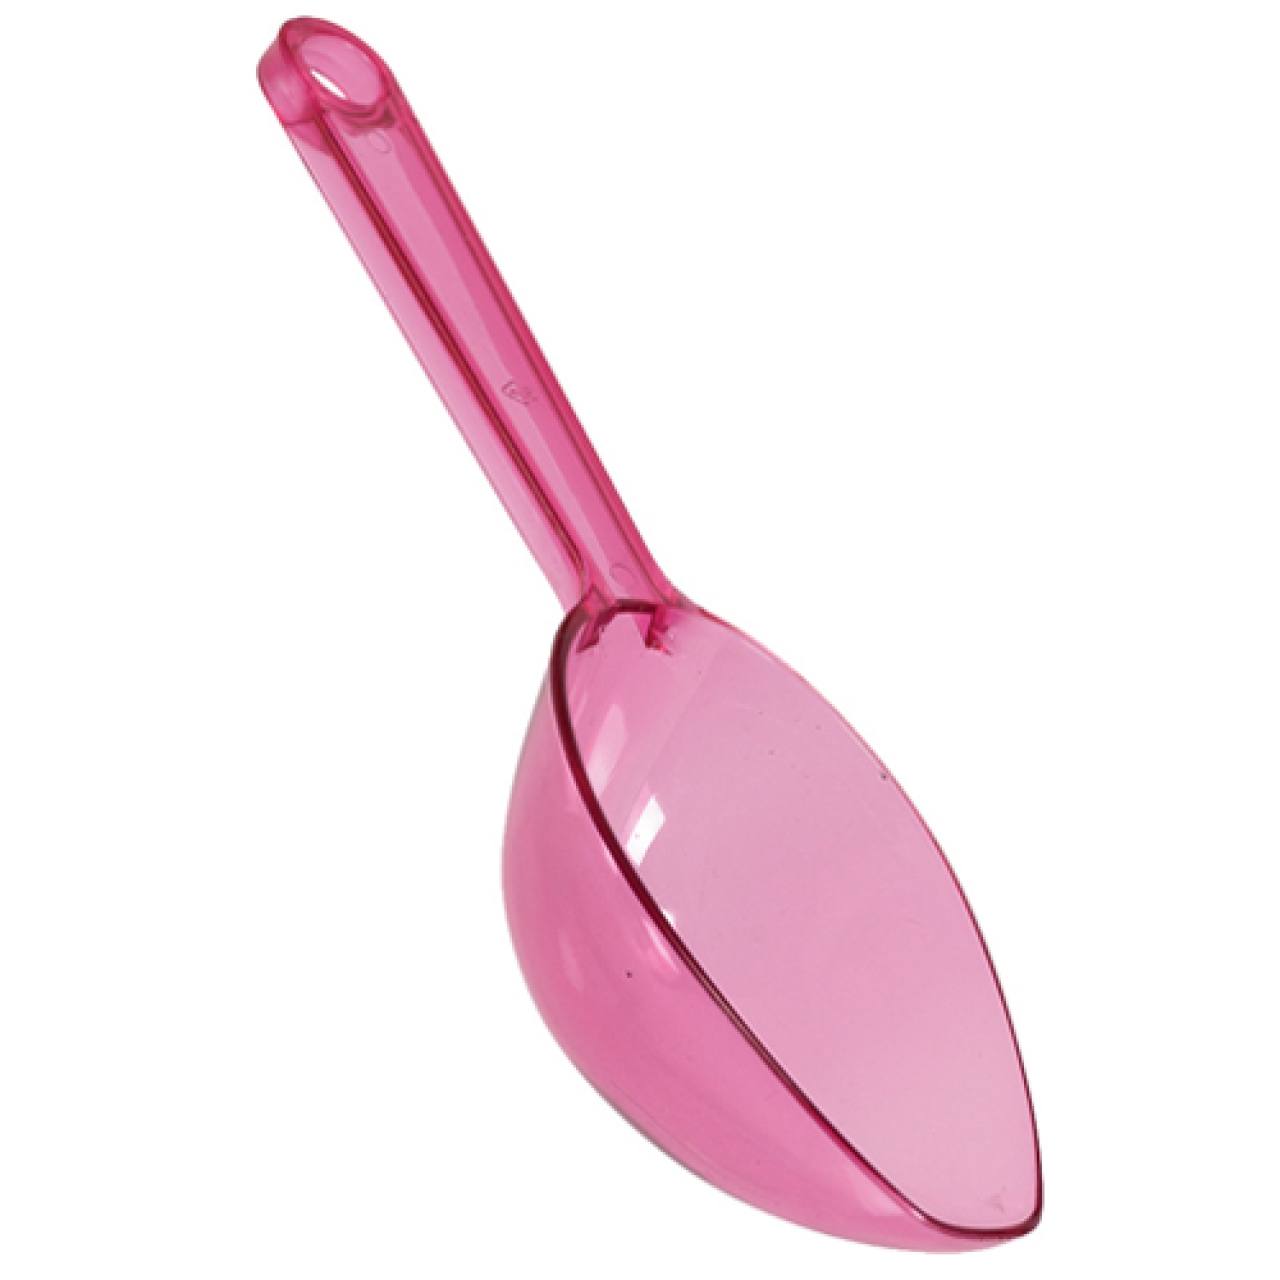 Bonbonschaufel Pink, 17 cm